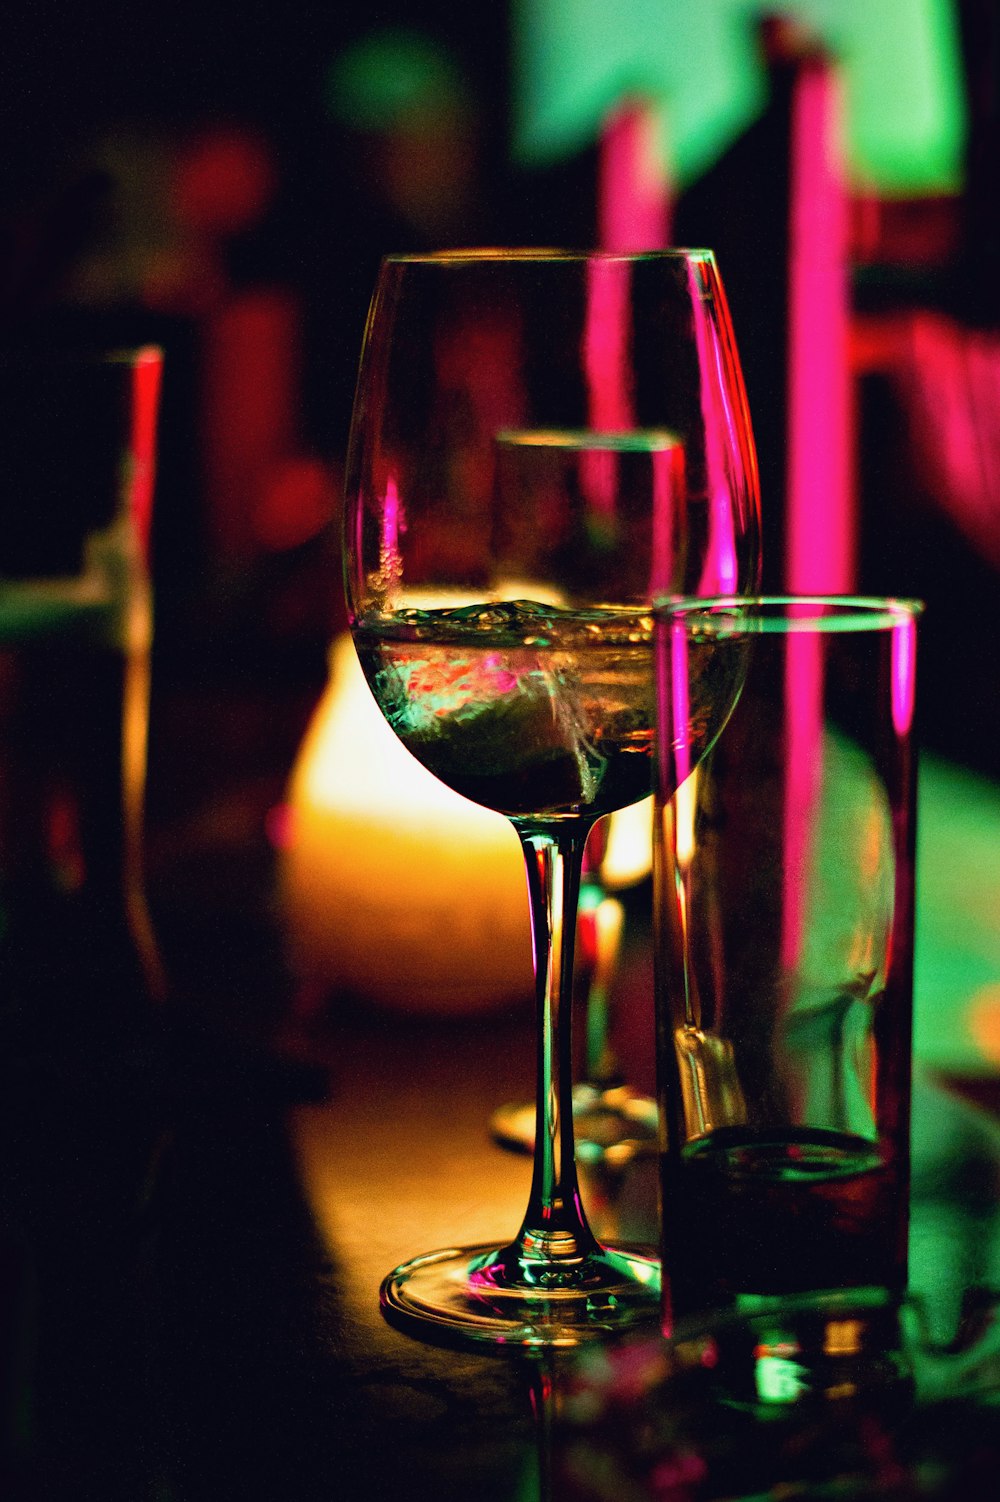 Copa de vino medio llena junto a una copa de pinta transparente medio vacía